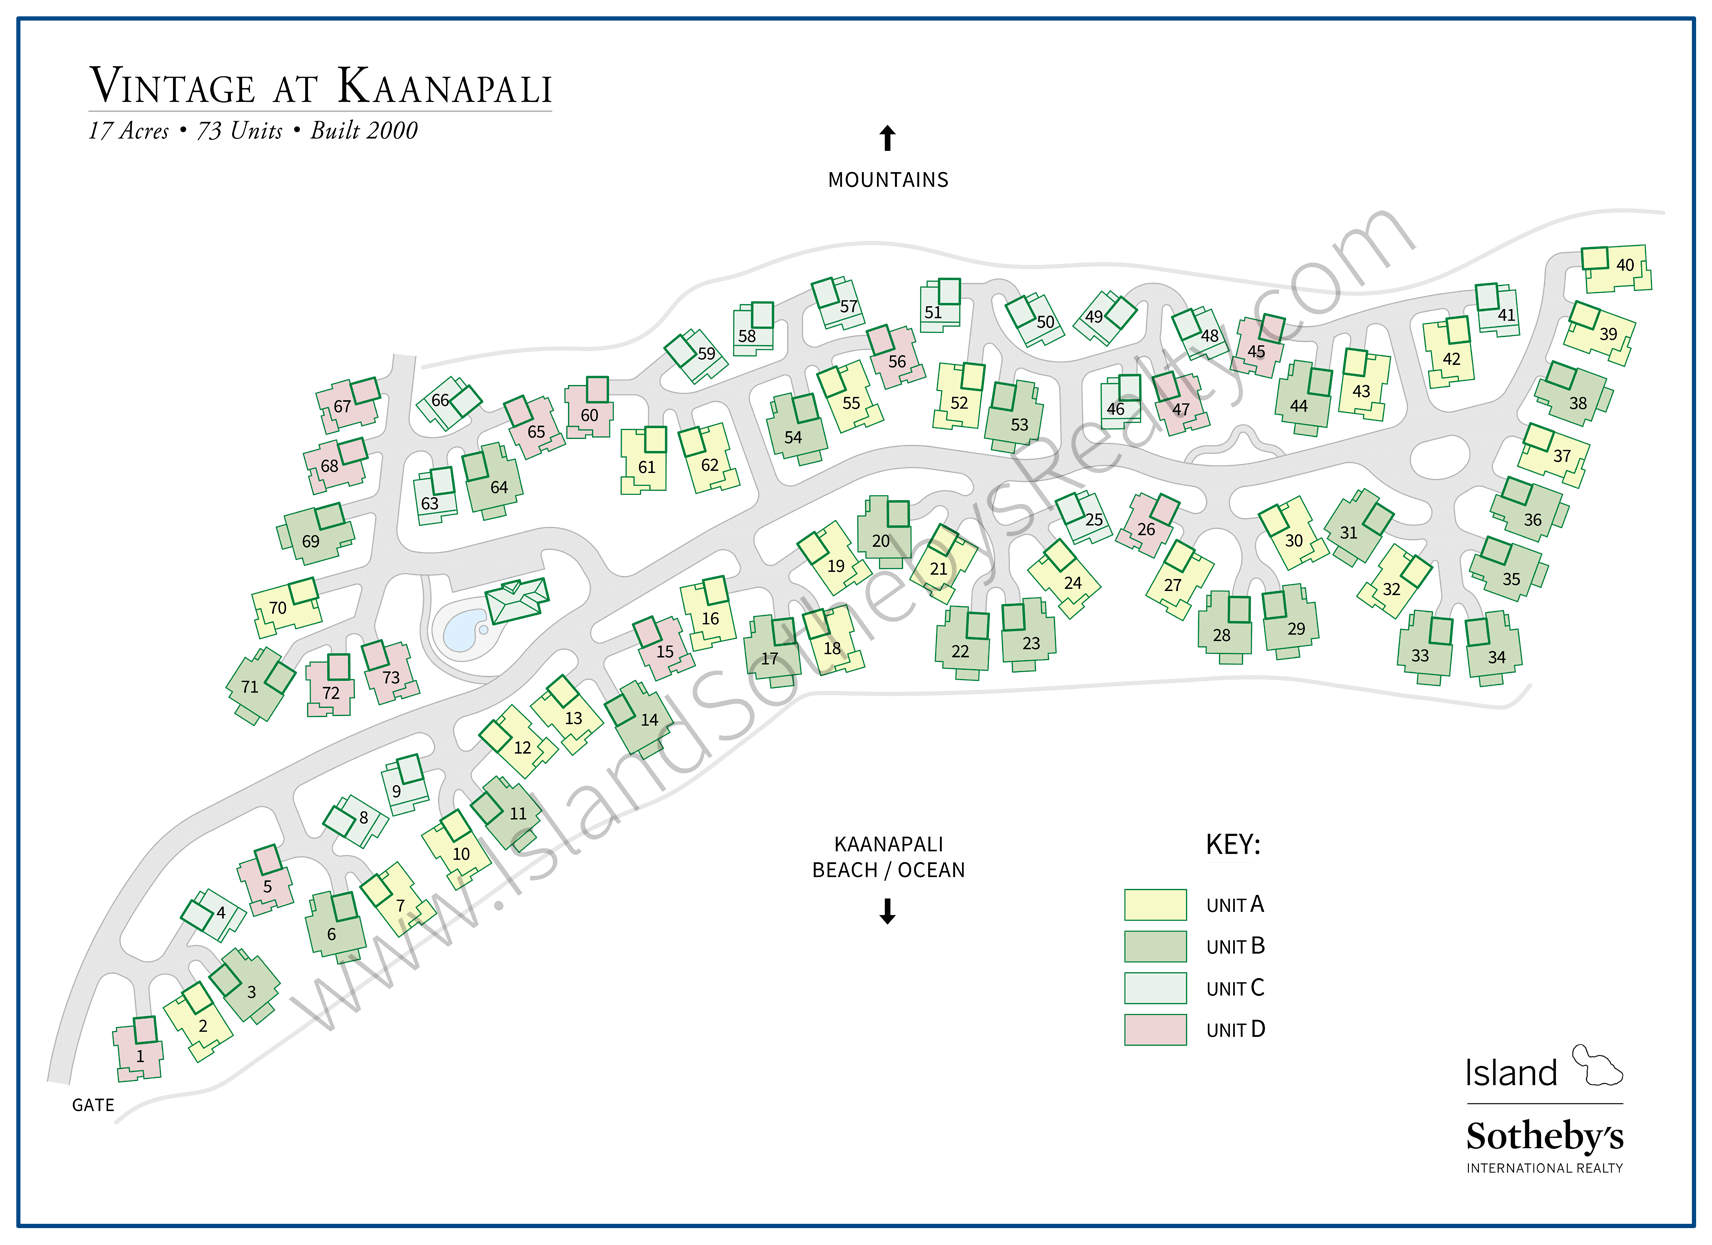 Map of Vintage at Kaanapali Maui